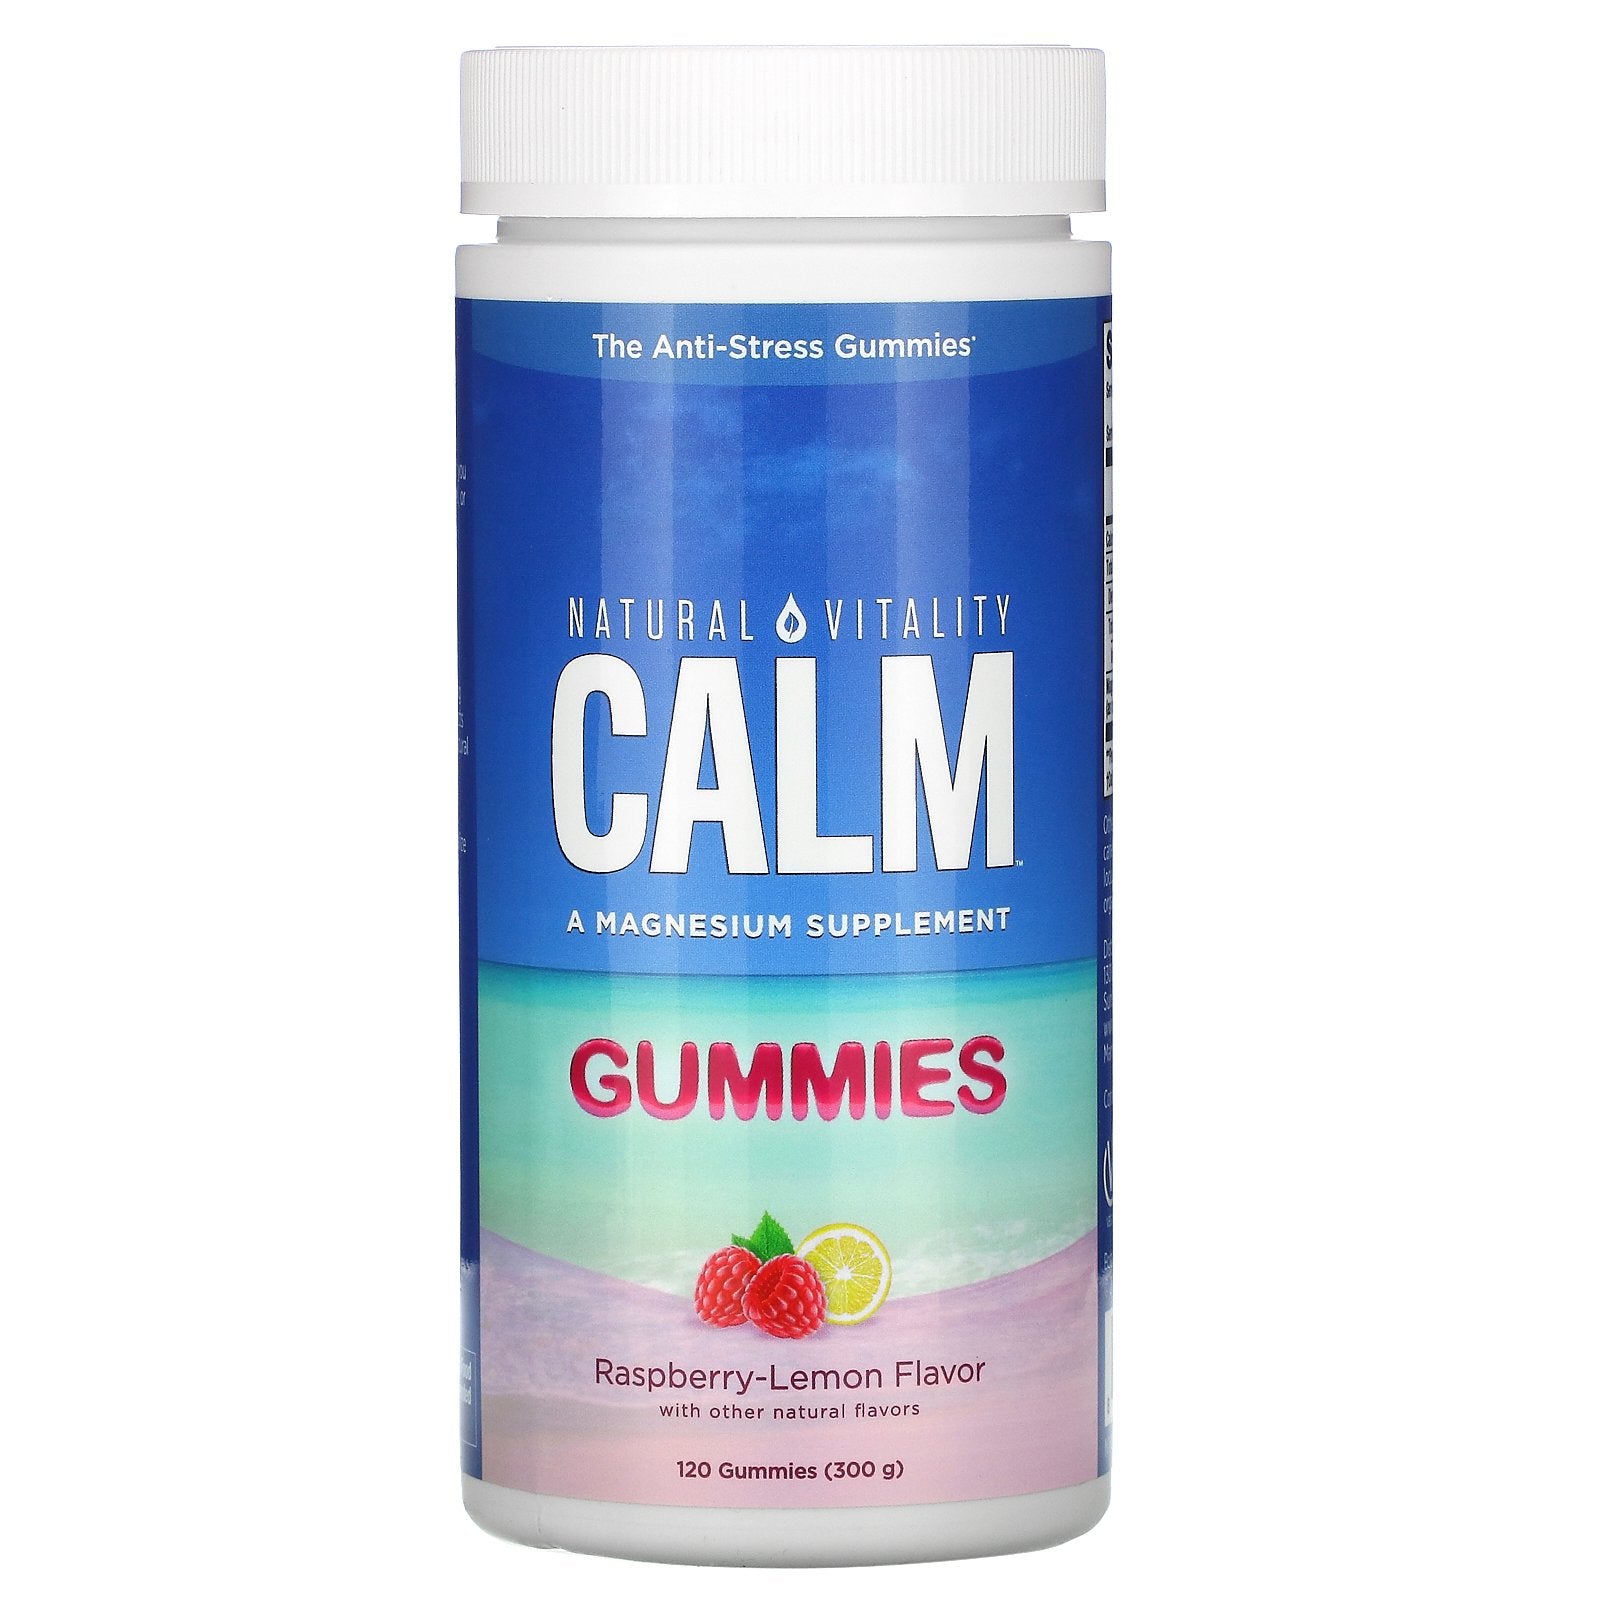 Natural Vitality, CALM, The Anti-Stress Gummies, Raspberry-Lemon Flavor, 120 Gummies